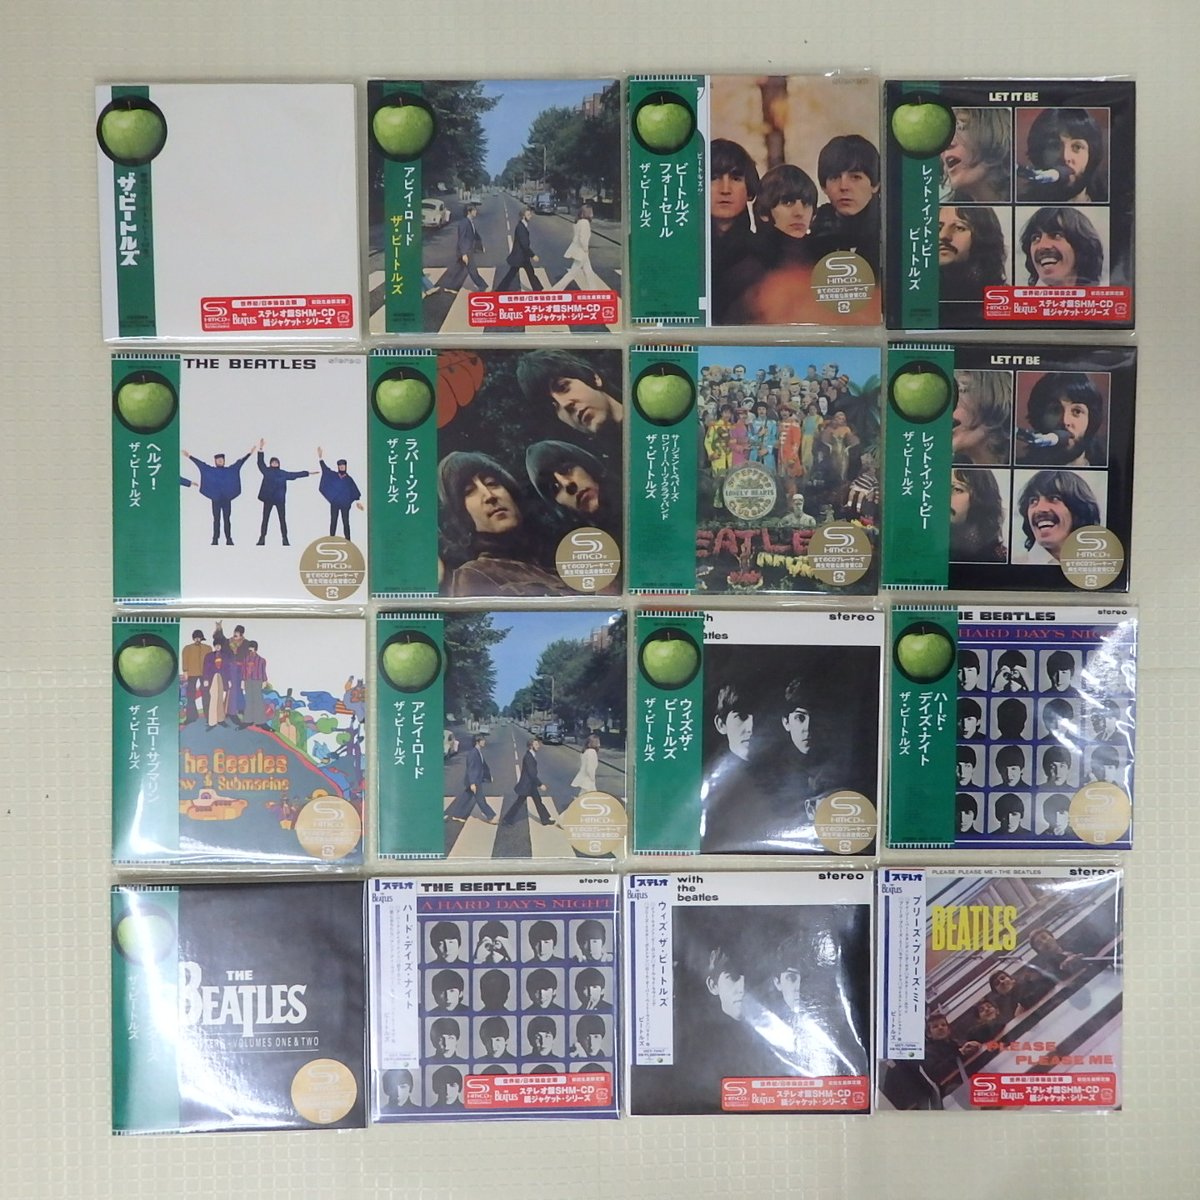 ビートルズの紙ジャケCDがまとめて入荷しています。
中古CD&レコード買取販売 音吉プレミアム 
浜松市中央区宮竹町319-2  053-466-2733
otokichi.com
#ビートルズ #紙ジャケ #cd買取